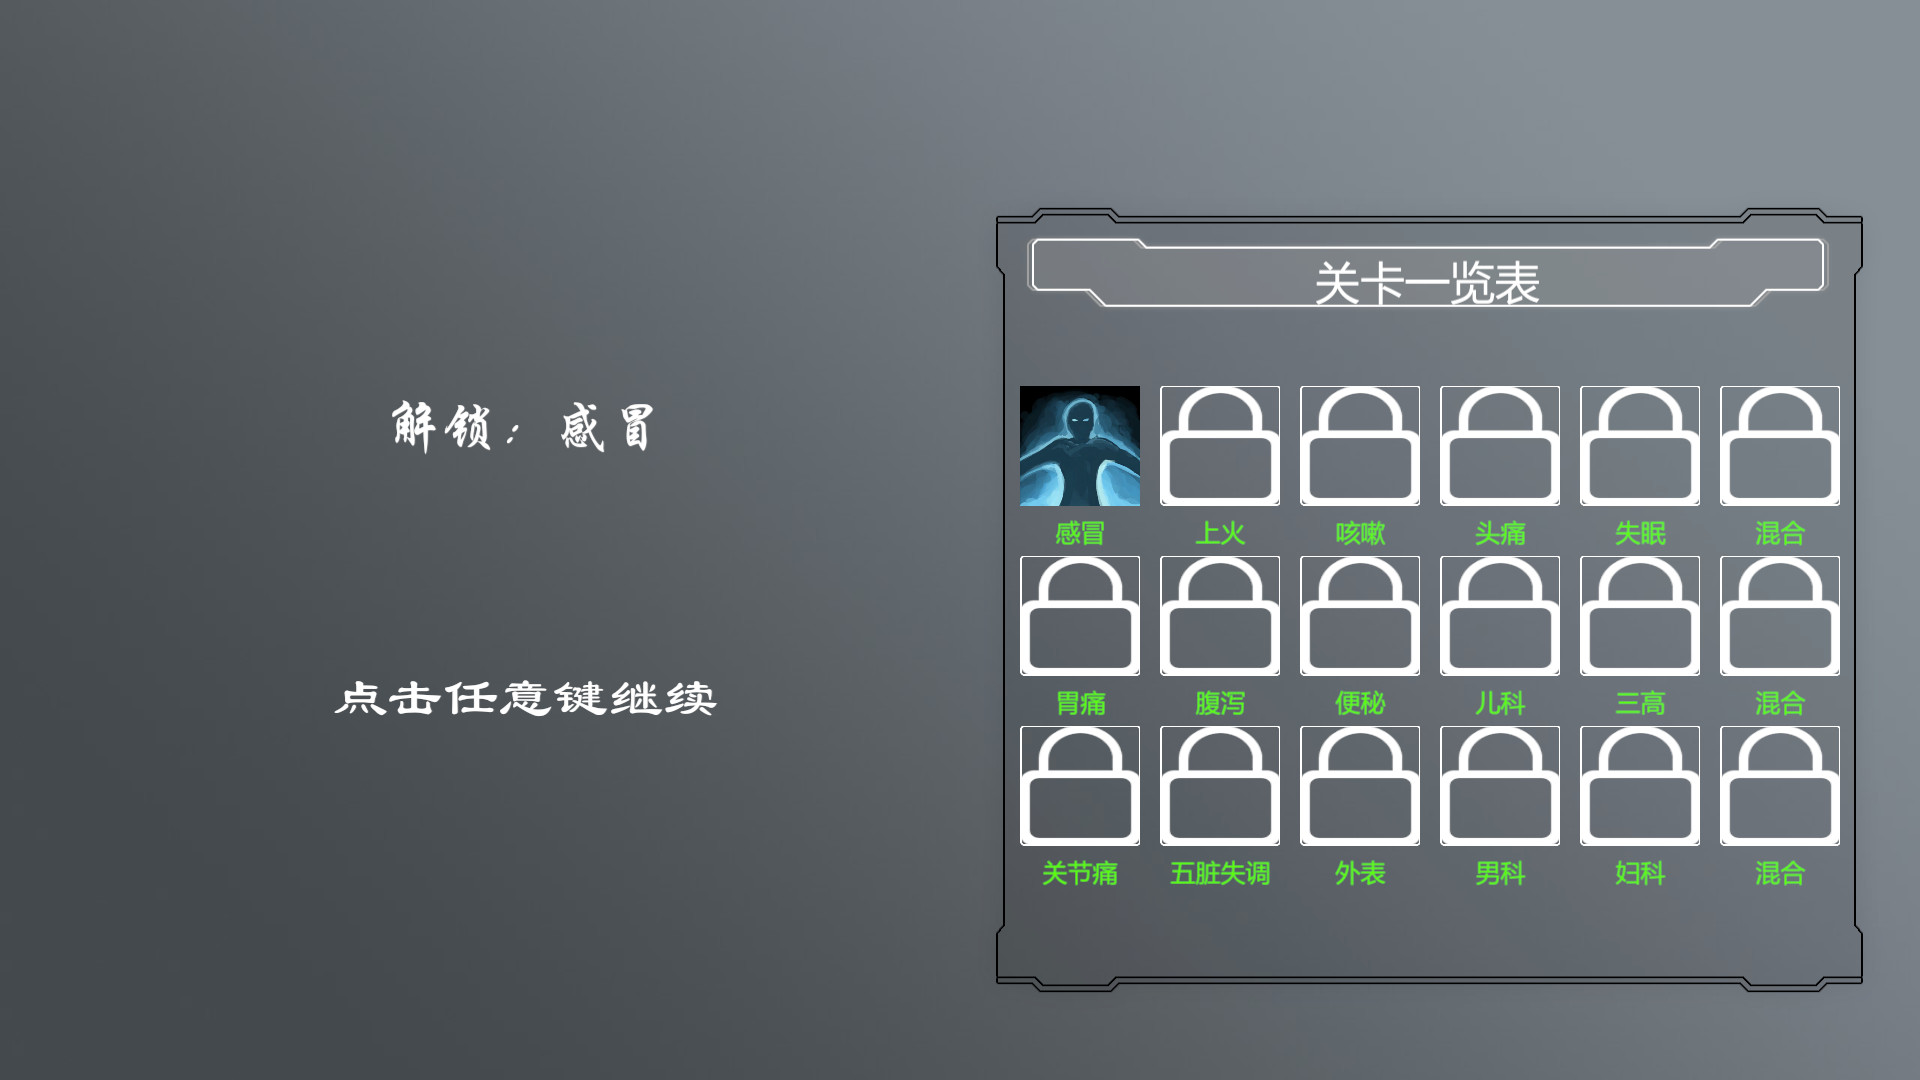 中医模拟器/Traditional Chinese medicine simulator插图7